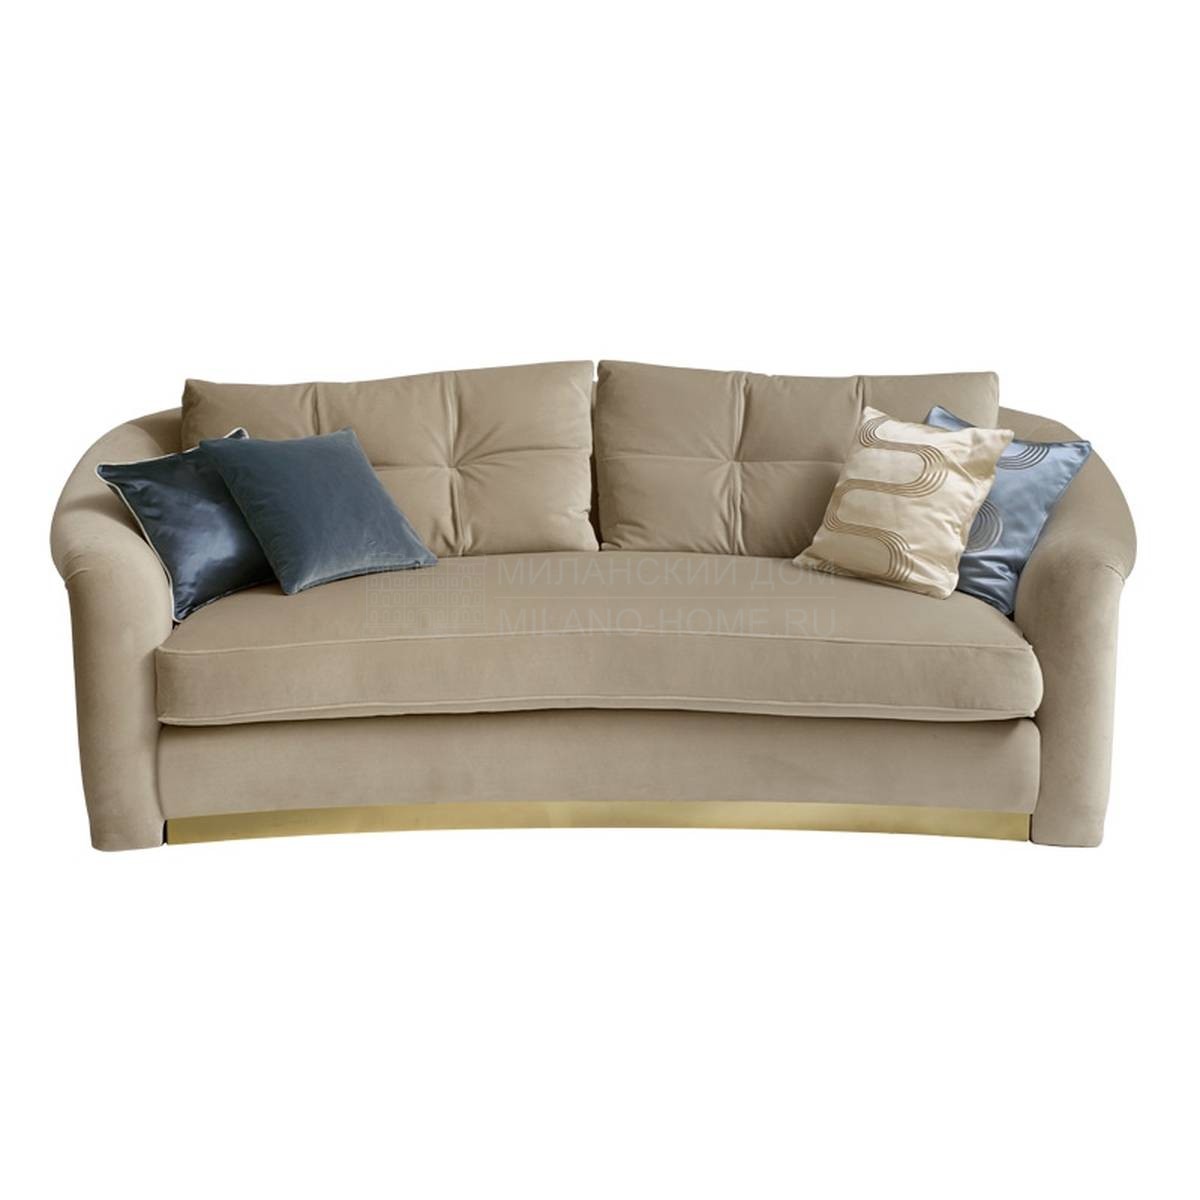 Прямой диван Madame/ sofa из Италии фабрики SOFTHOUSE